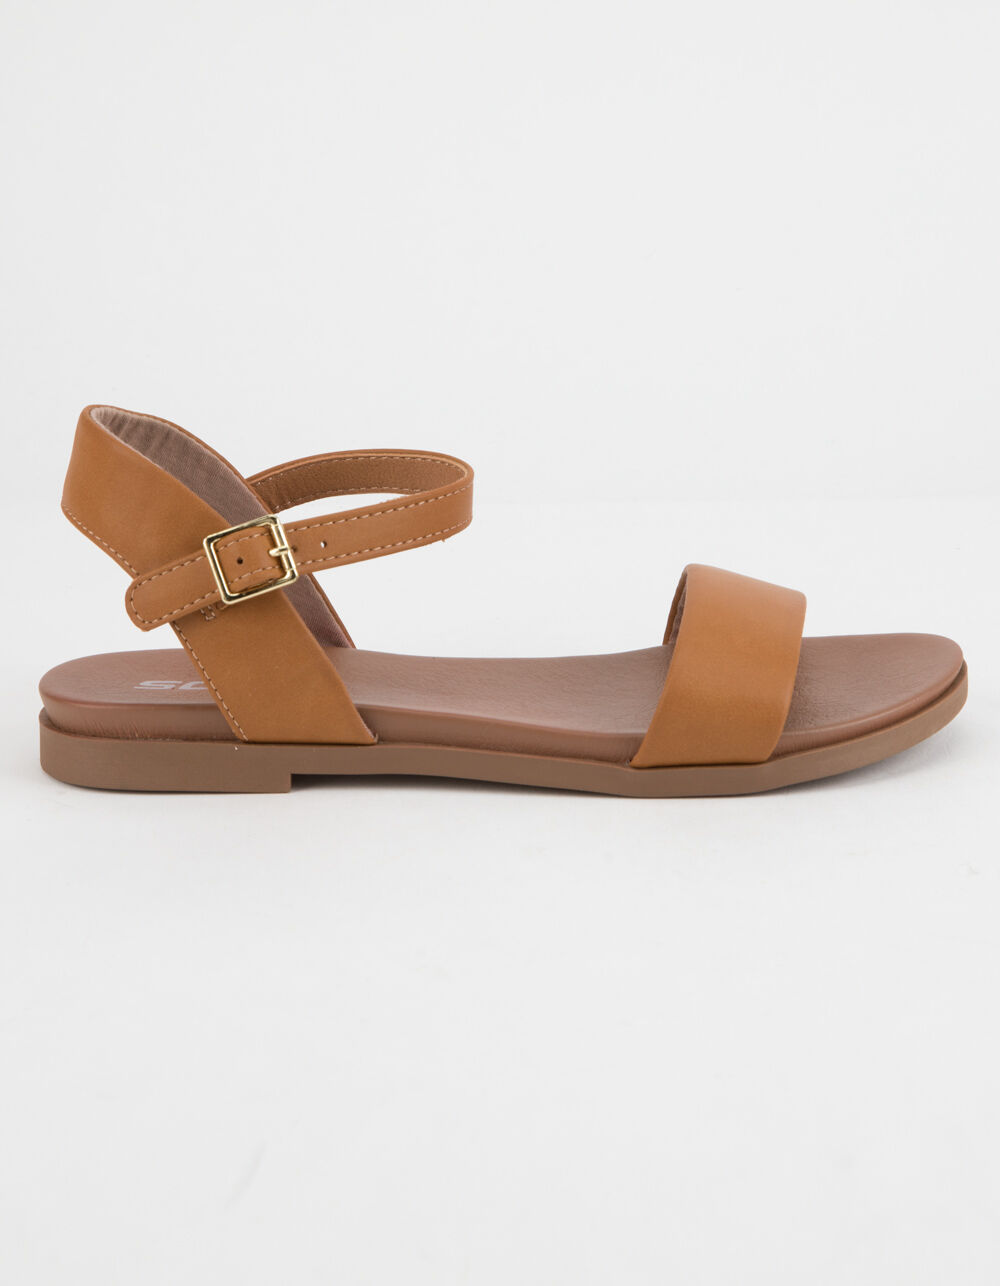 SODA Comfy Meadow Tan Womens Sandals - TAN | Tillys